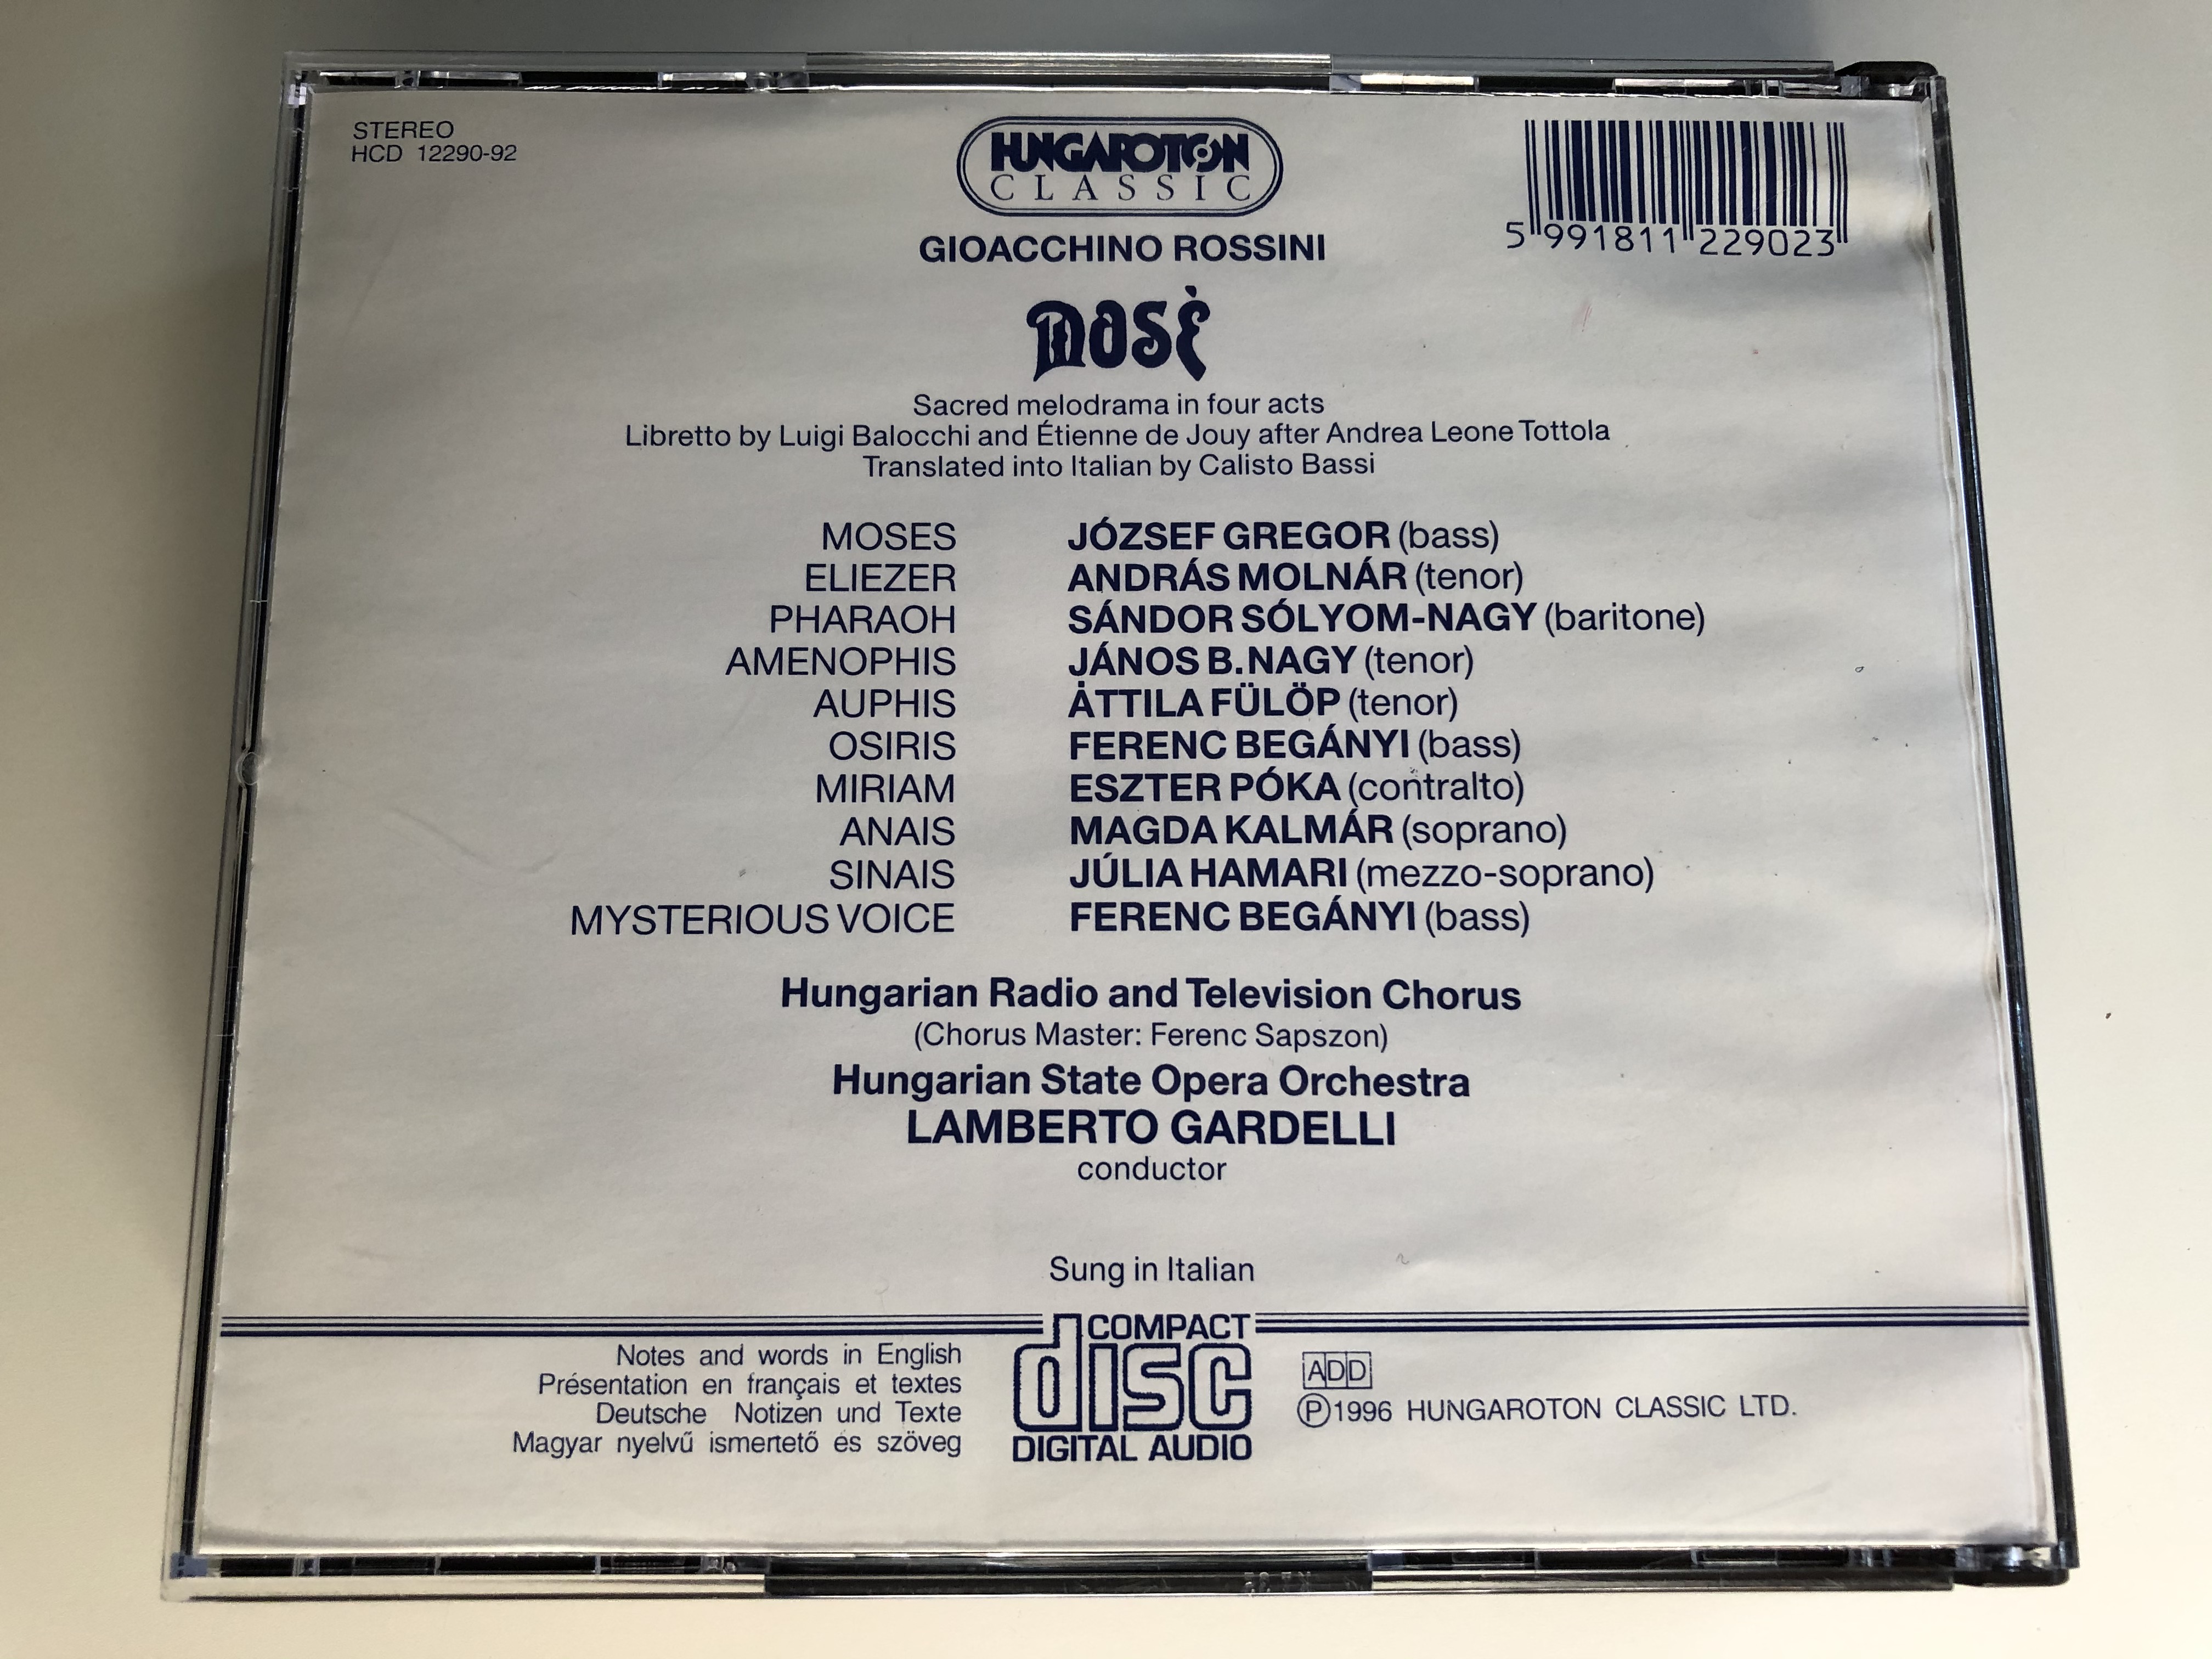 rossini-mos-j-zsef-gregor-magda-kalm-r-janos-b.-nagy-julia-hamari-s-ndor-s-lyom-nagy-lamberto-gardelli-hungaroton-classic-3x-audio-cd-1996-stereo-hcd-12290-92-6-.jpg